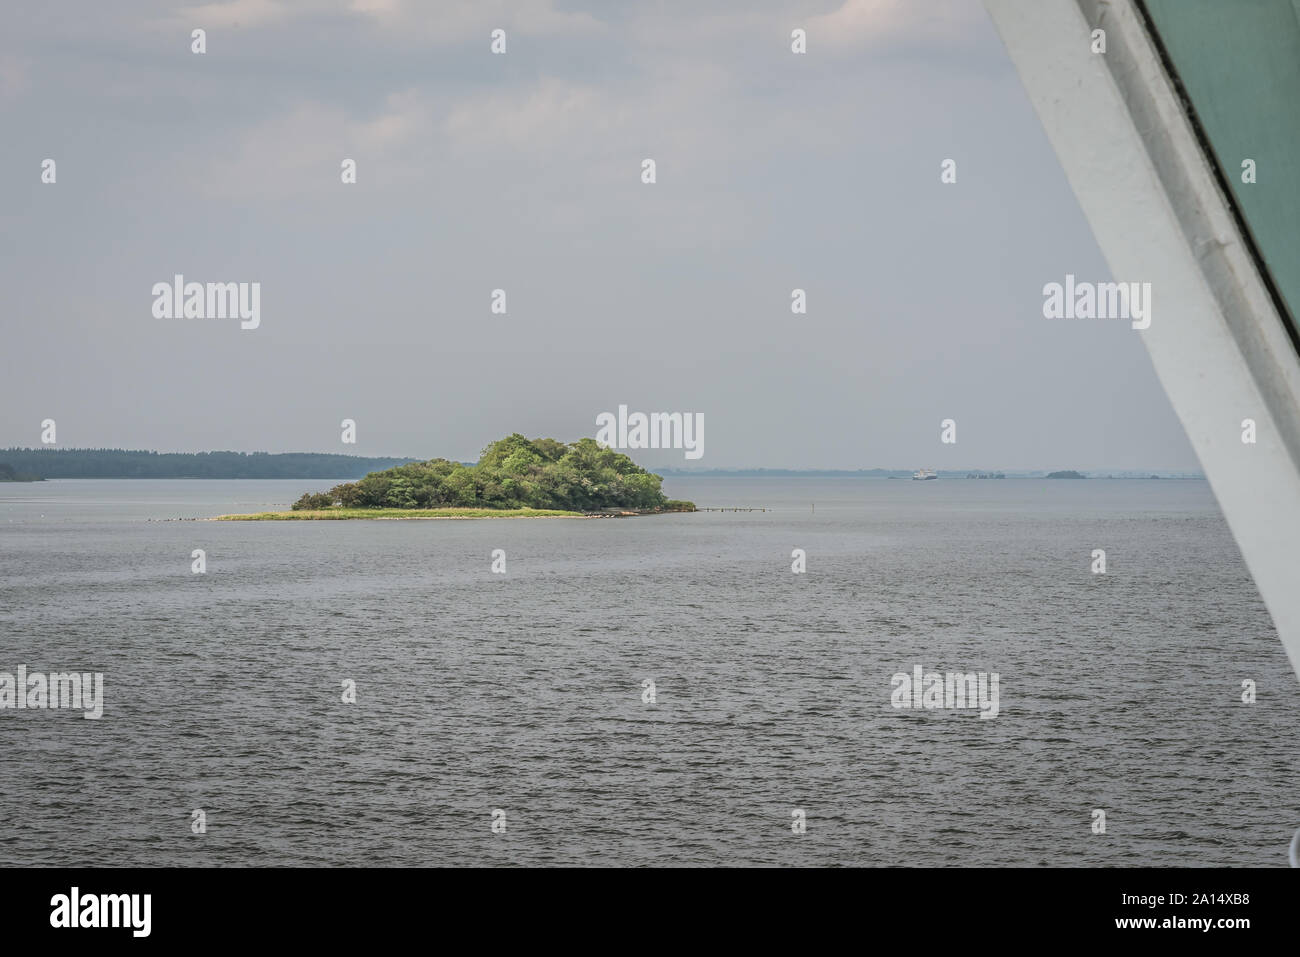 Une petite île avec des arbres verts seul dans l'océan, vue depuis une fenêtre de ferry, Svendborg, Danemark, le 13 juillet 2019 Banque D'Images